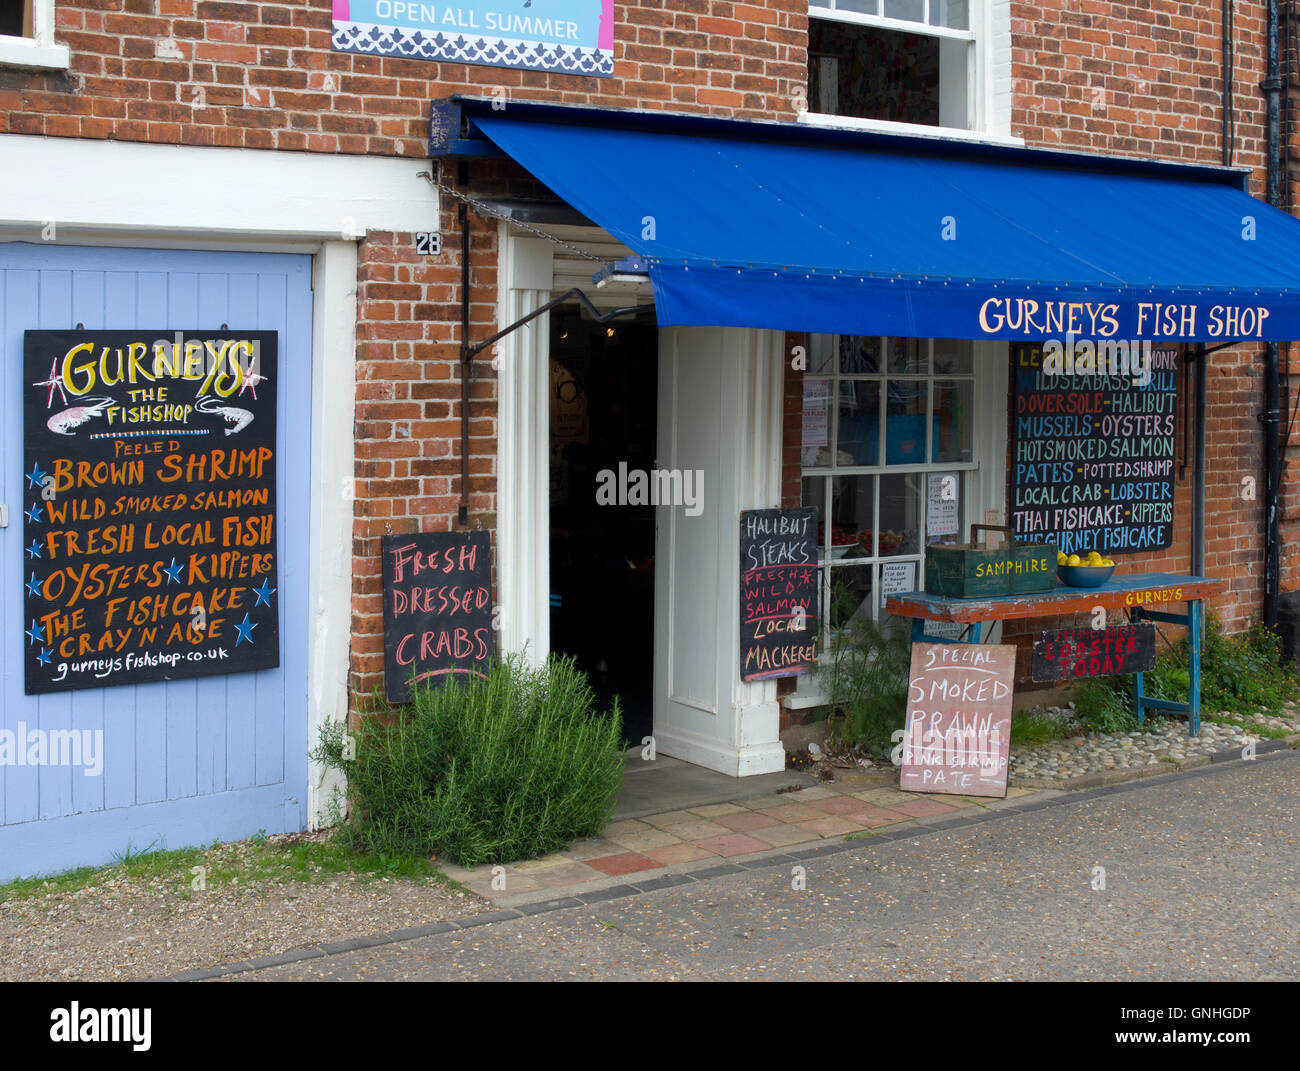 Shoppen Sie vor Gurneys Fish Shop im trendigen Dorf Burnham Market in North Norfolk. Manchmal auch als Chelsea-by-the-Sea bezeichnet Stockfoto